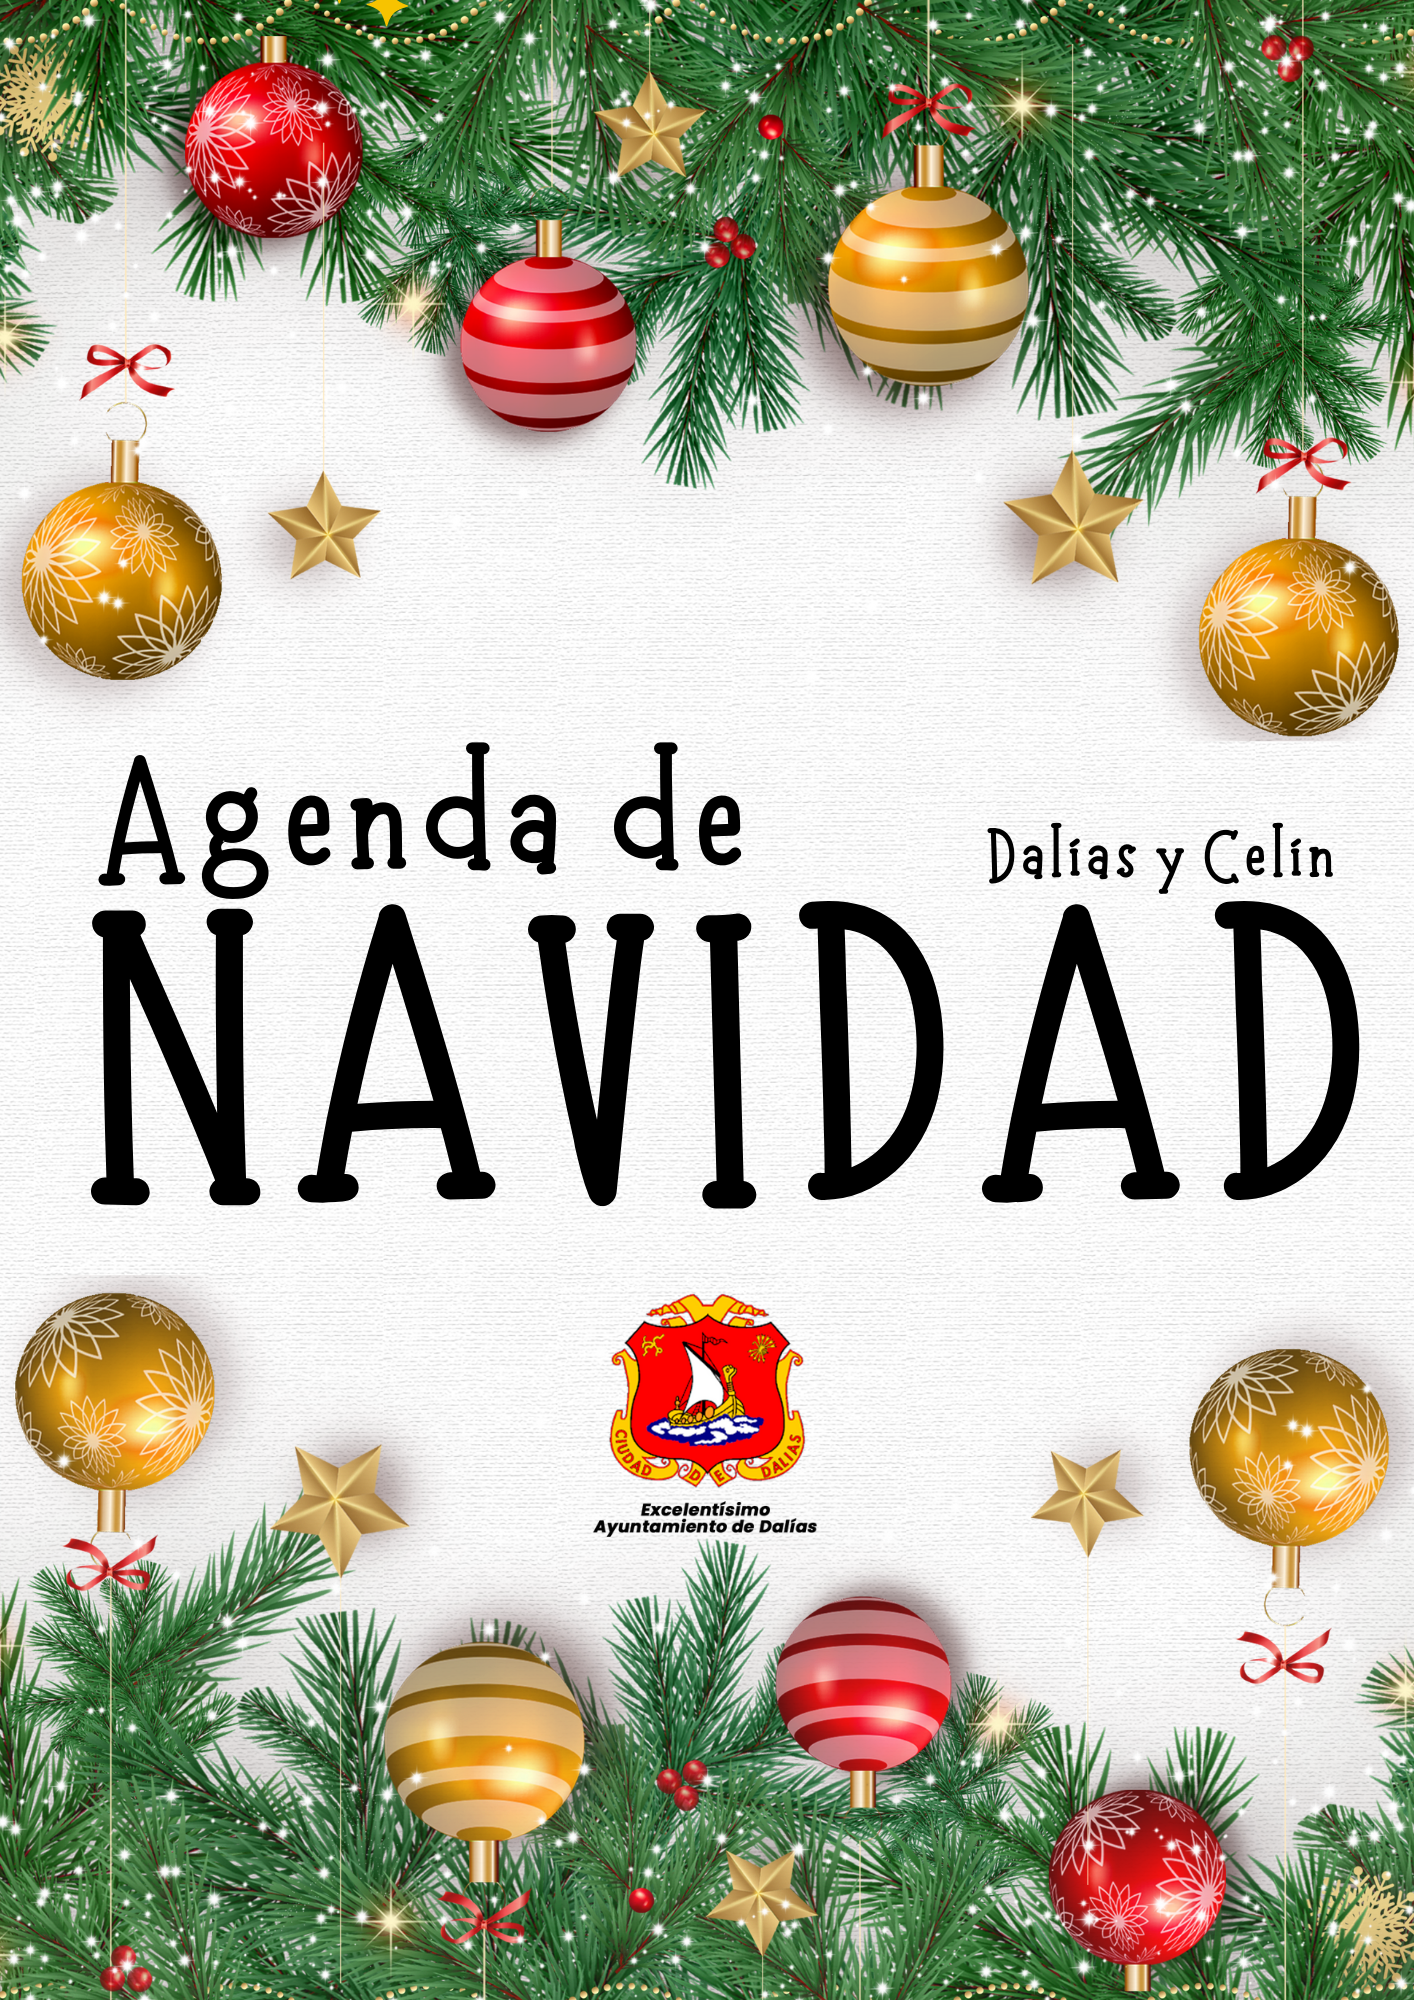 Dalías presenta la programación de Navidad